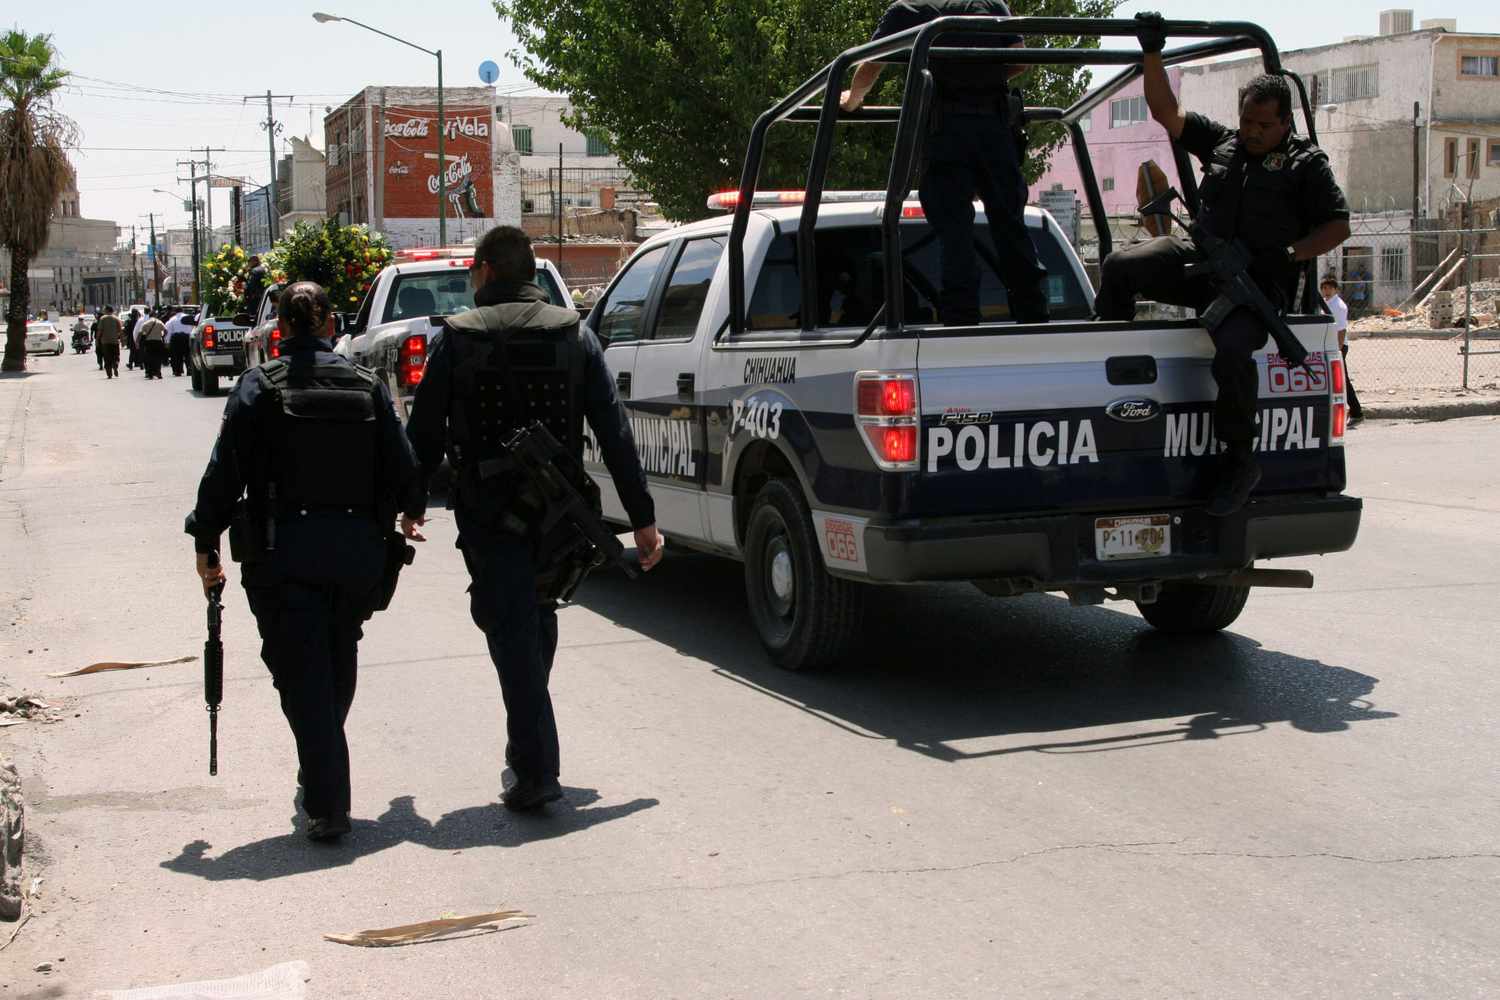 Policia, mexico, ciudades mas violentas del mundo